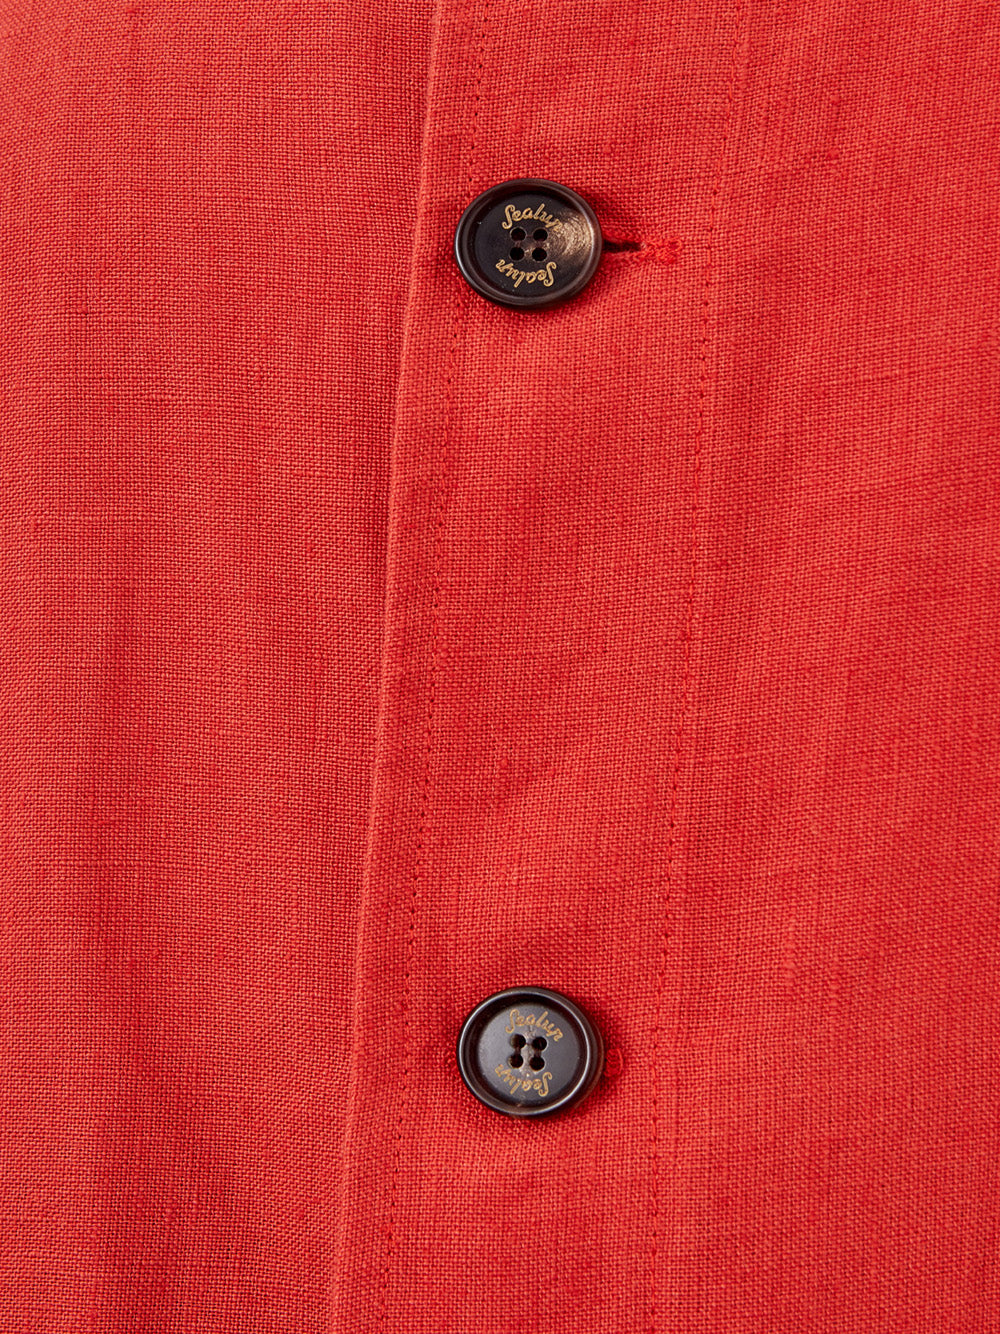 Orange Cropped Jacket in Linen Effect